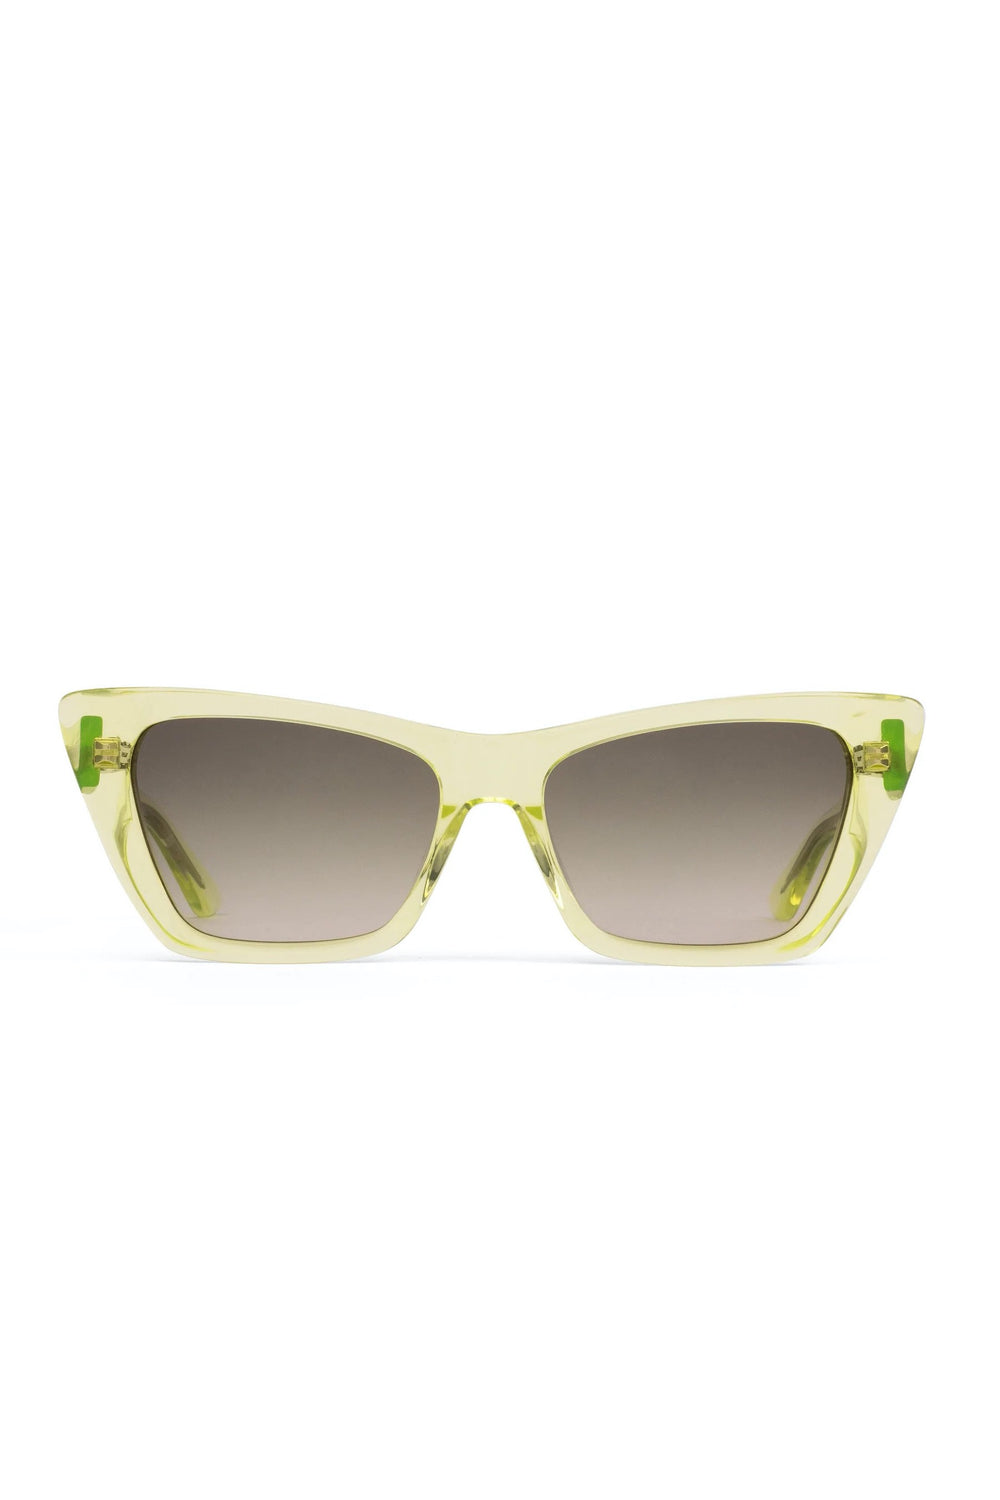 Limeade Wonderland Sunglasses